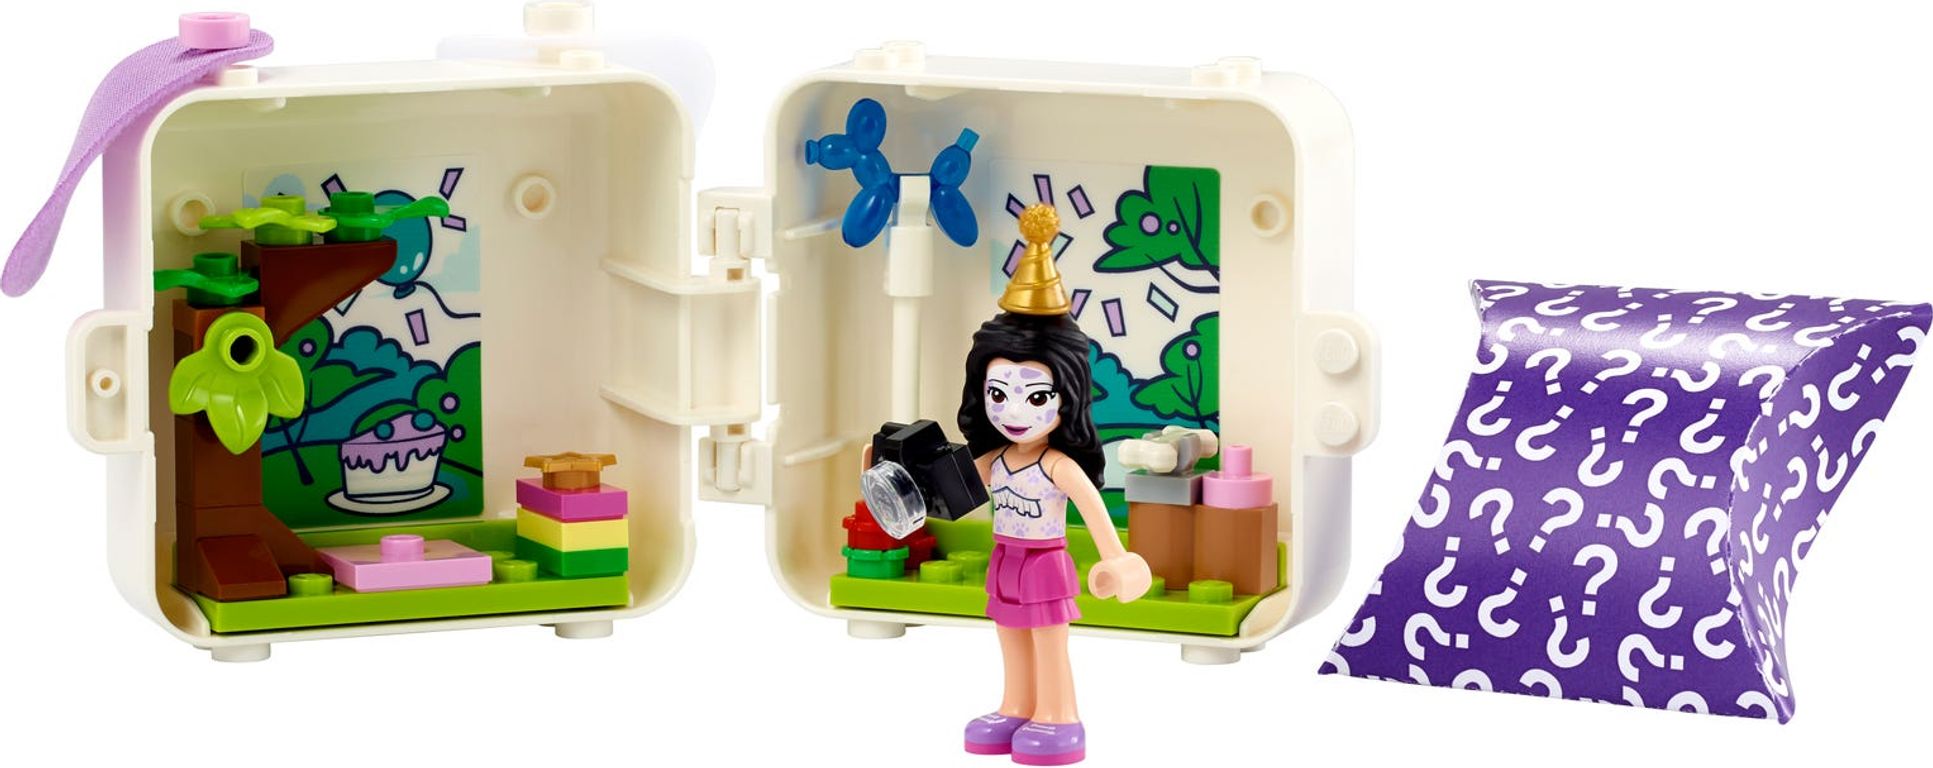 LEGO® Friends Emma's Dalmatian Cube components